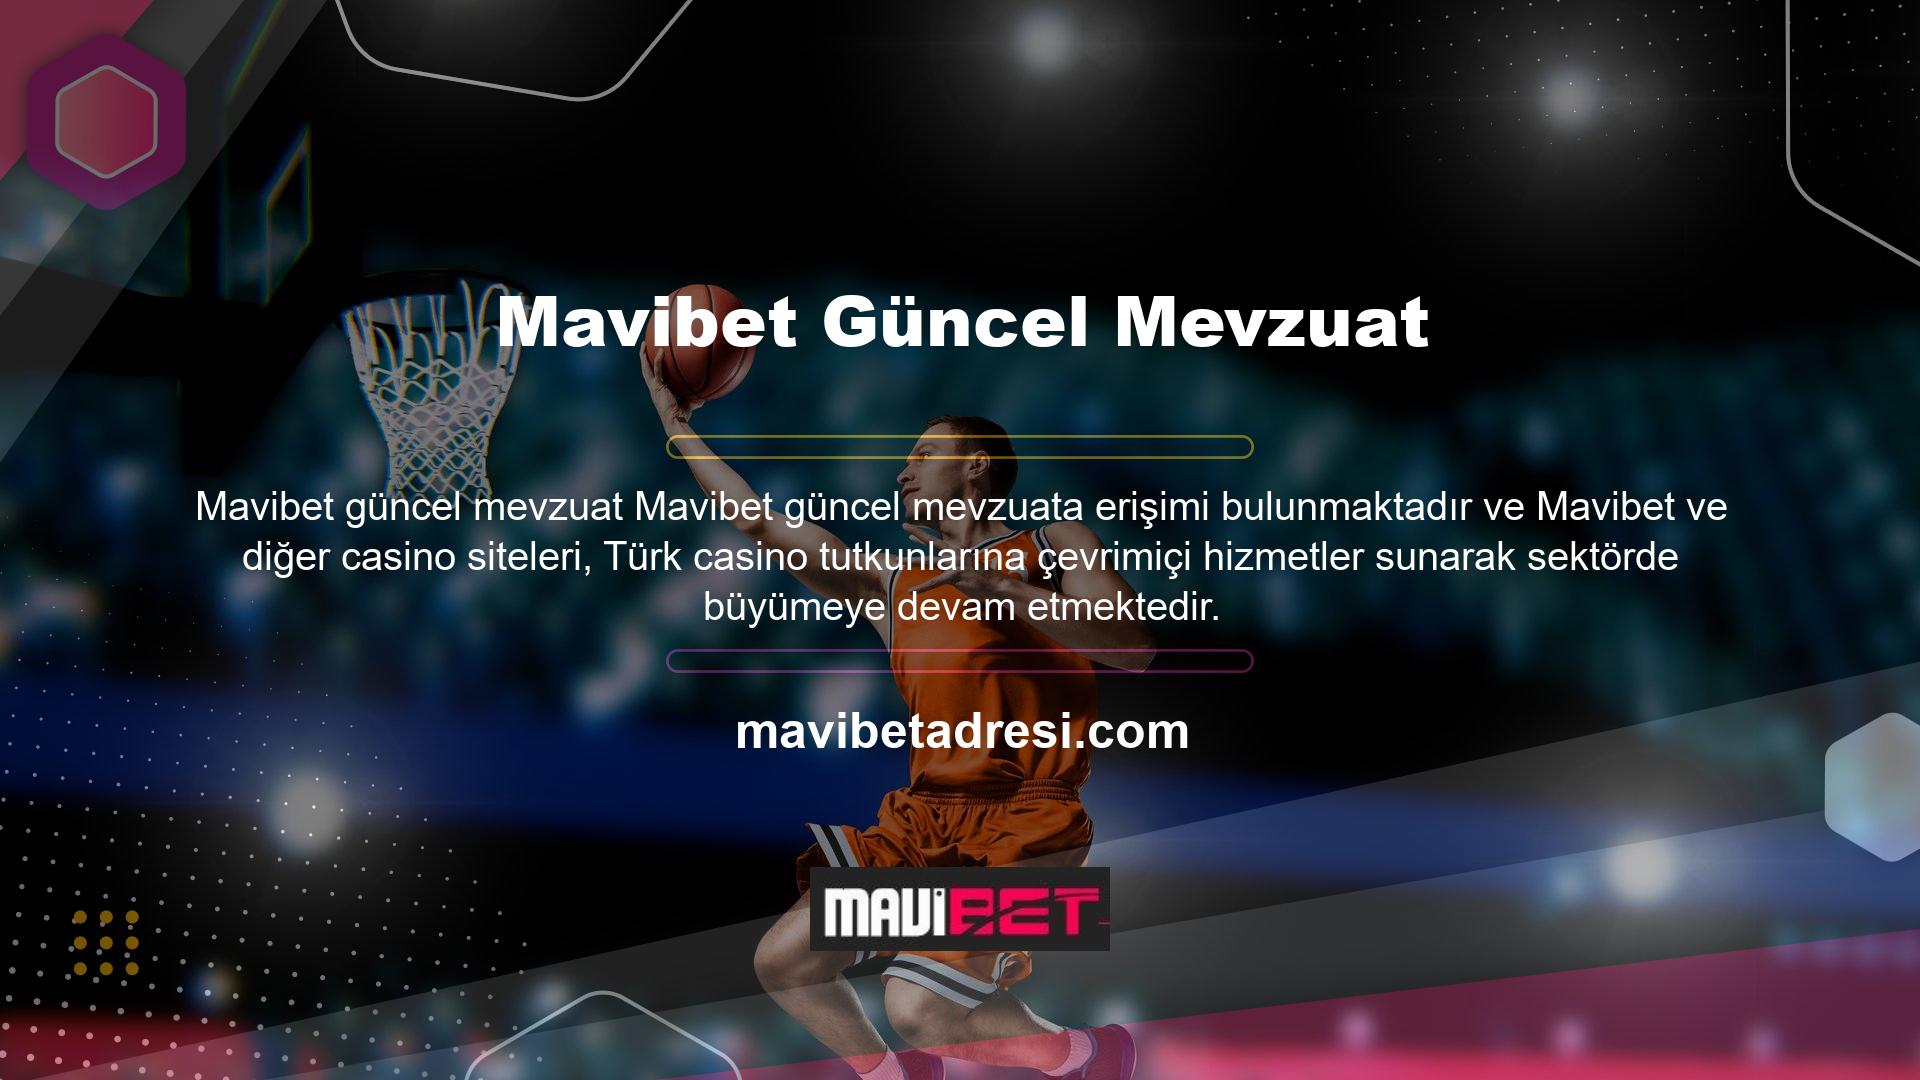 Ancak internette dahi Mavibet internet erişim adresinin aynısı olan casino siteleri, Türkiye'deki kullanıcılar da dahil olmak üzere bilgi teknolojileri ve değişim kurumları tarafından engellenmektedir